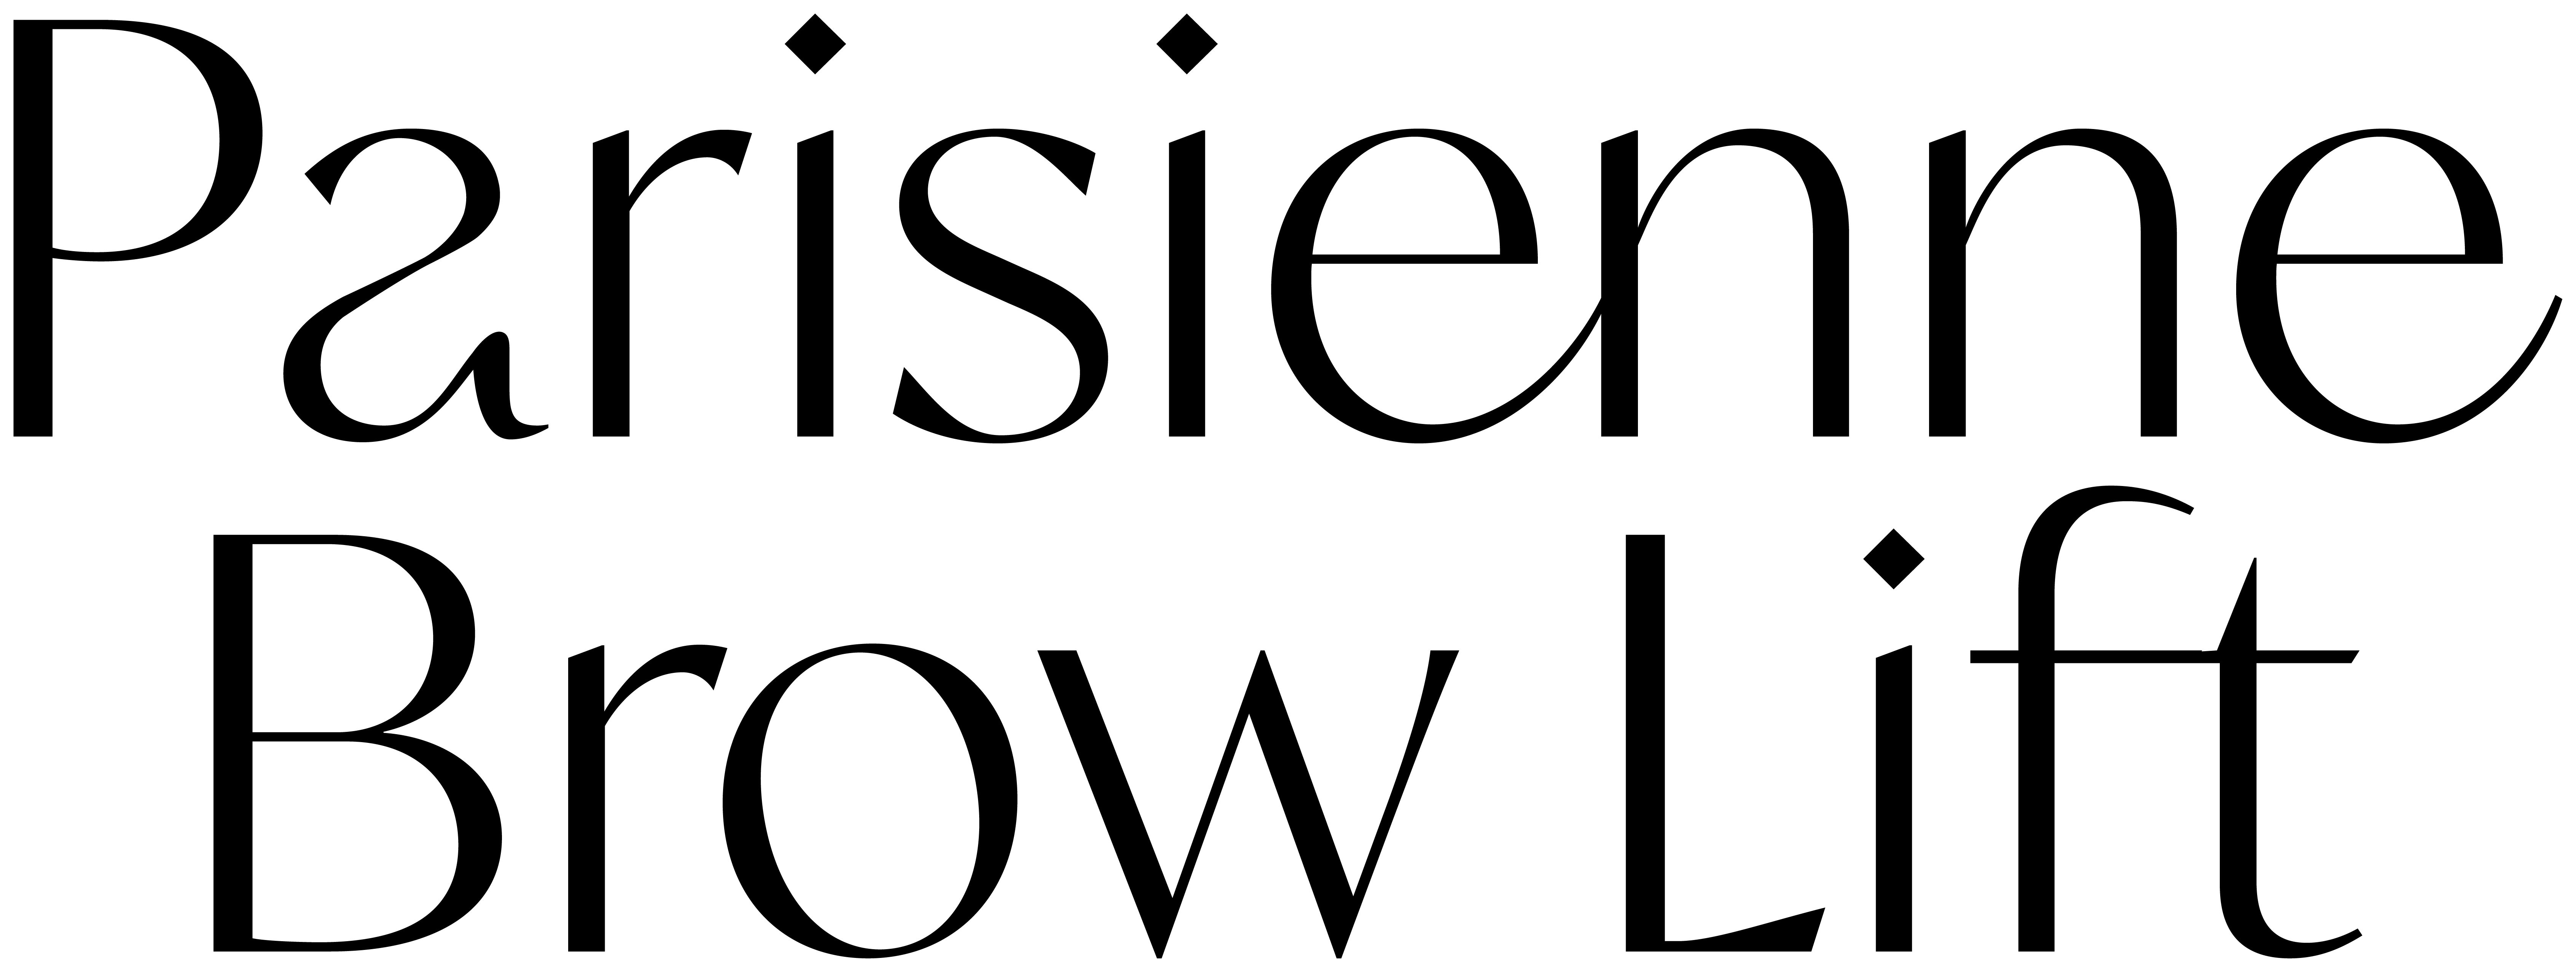 PBL_logo-01_BK